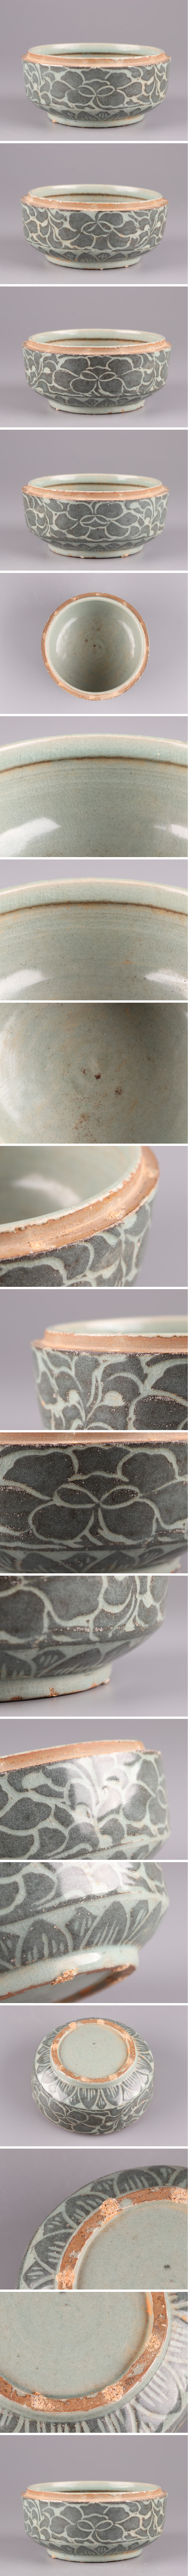 日本製人気古美術 朝鮮古陶磁器 高麗青磁 黒象嵌 蓋物 古作 時代物 極上品 初だし品 3390 高麗